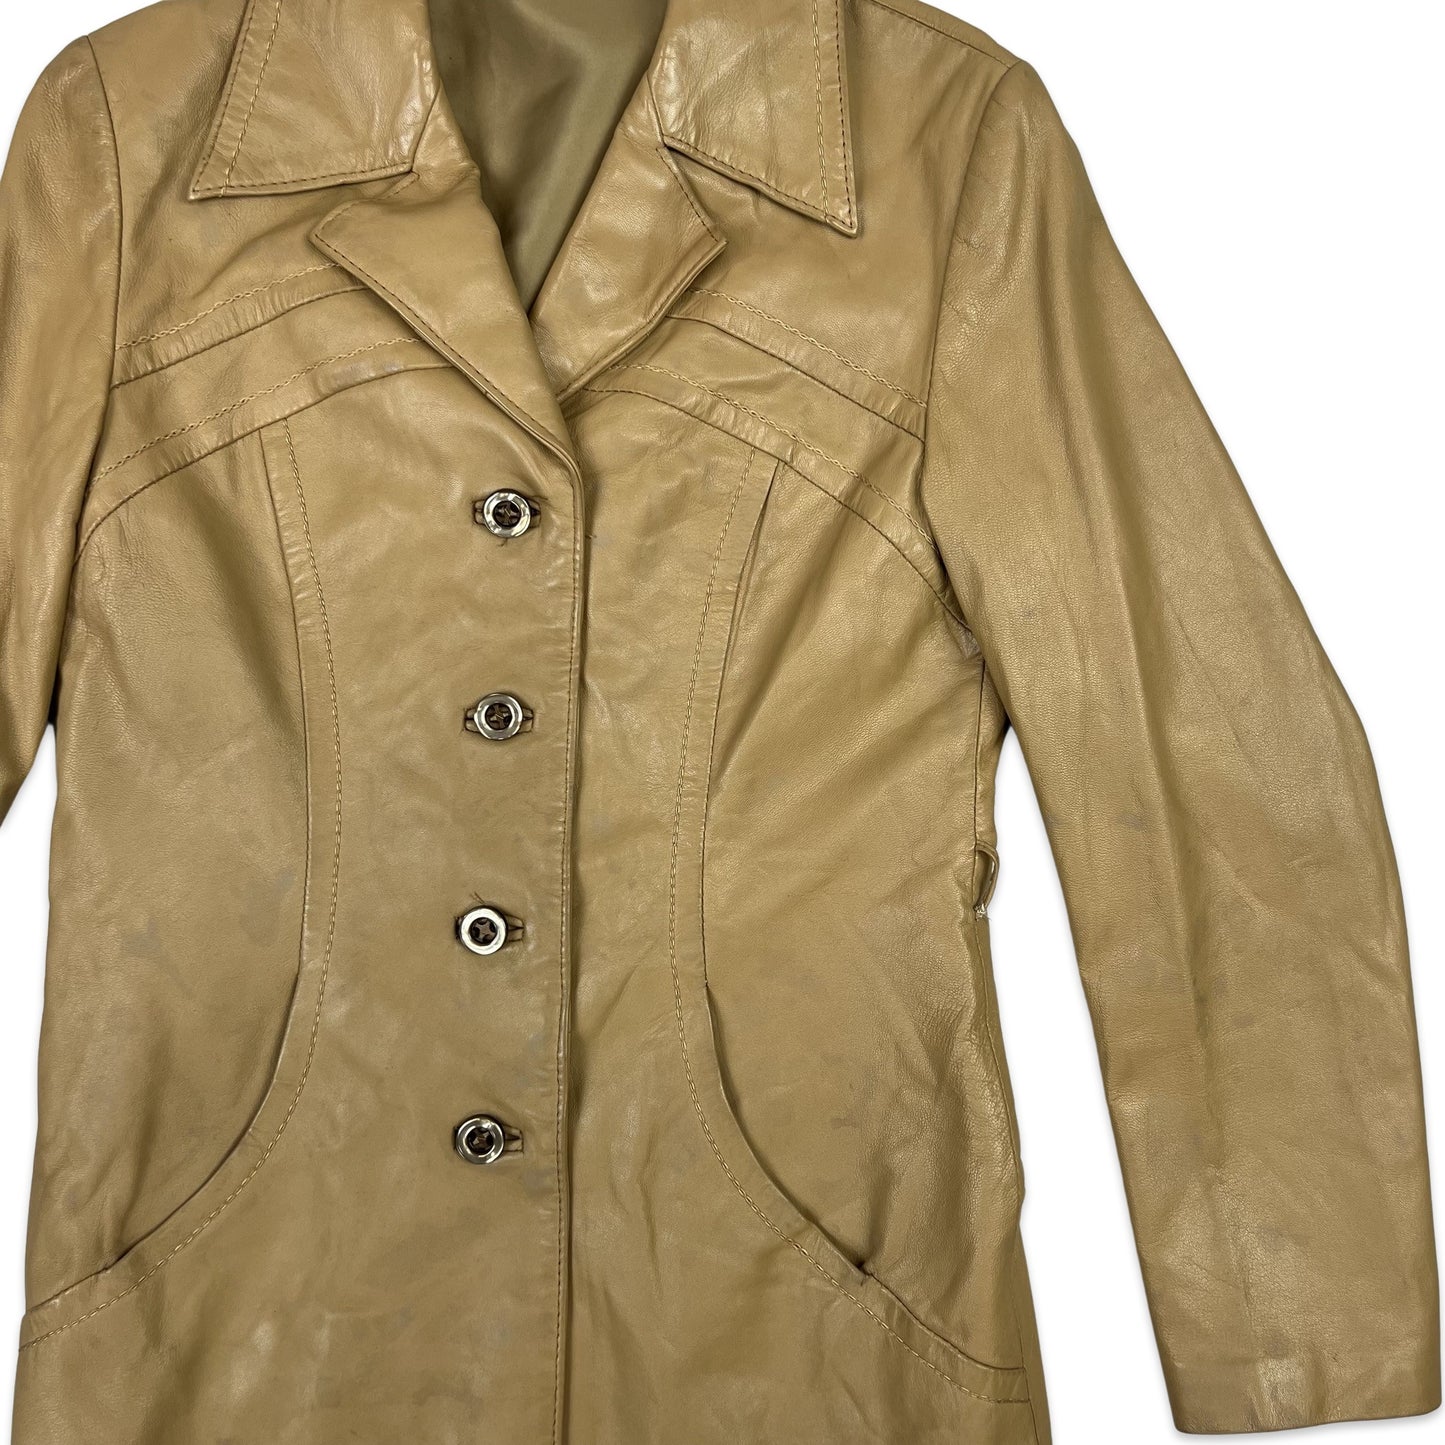 Vintage Short Leather Blazer Jacket Beige 6 8